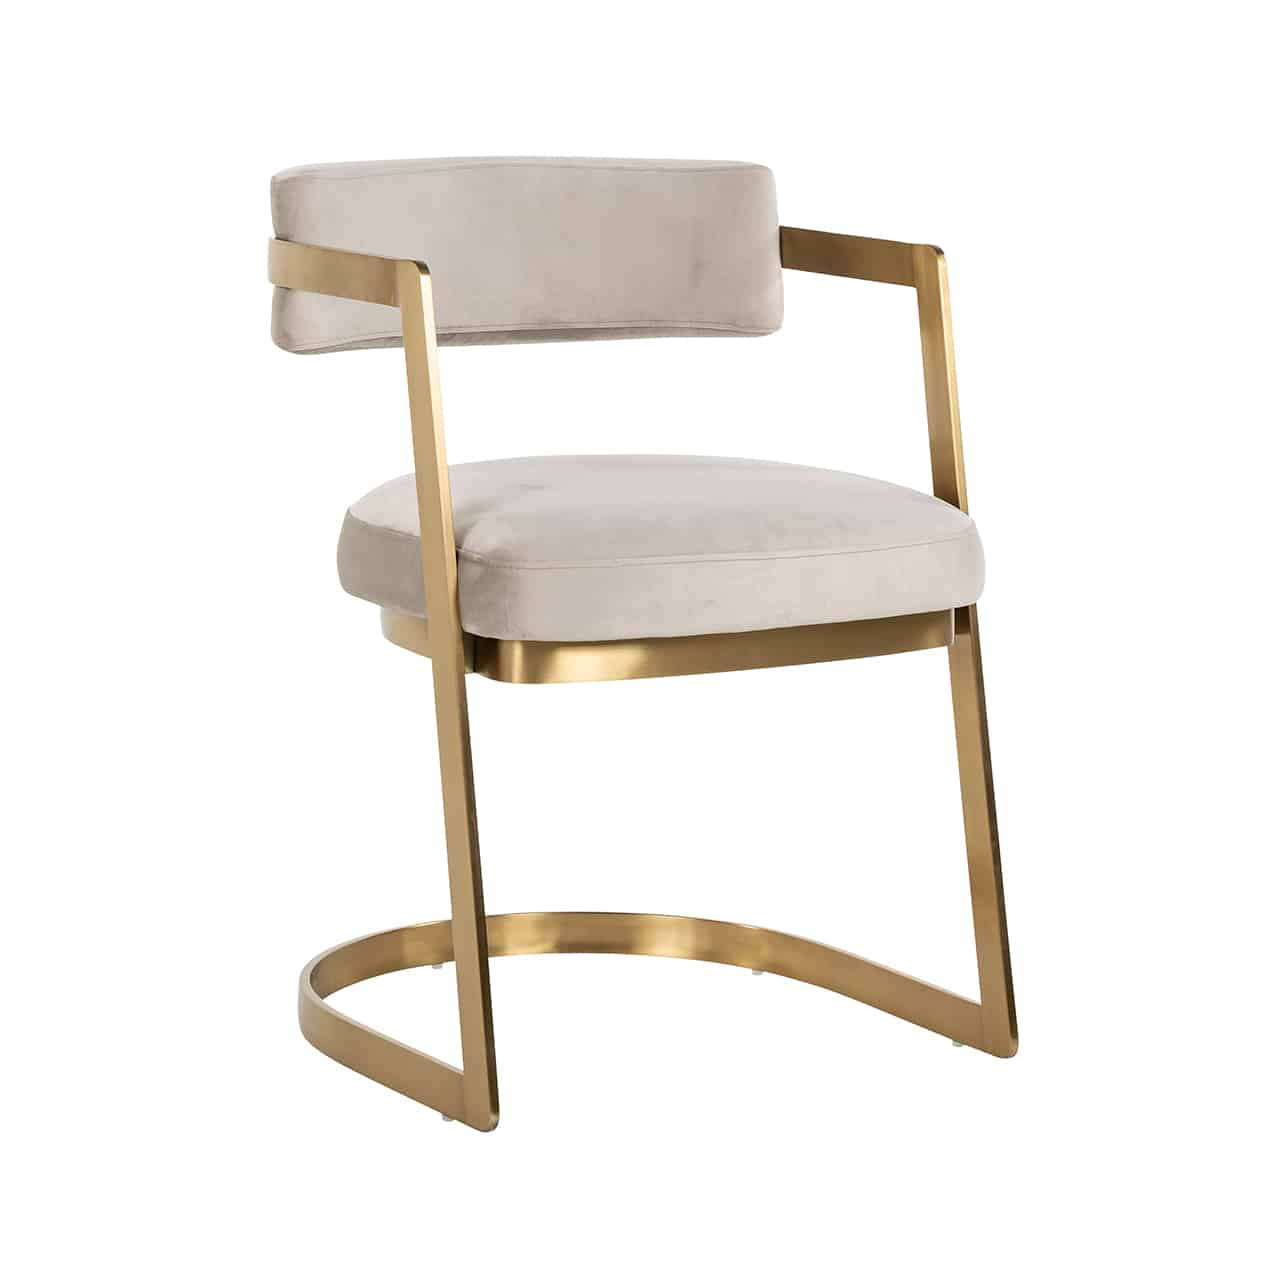 Stuhl mit einem halbrunden Kufengestell aus breiten goldenen Metallstreben aus denen sich auch die Armlehnen bilden, in der Rundung der Rücklehne ist ein rechteckiges Rückenpolster in khaki angebracht; auch das Sitzpolster in khaki liegt dem Gestell auf